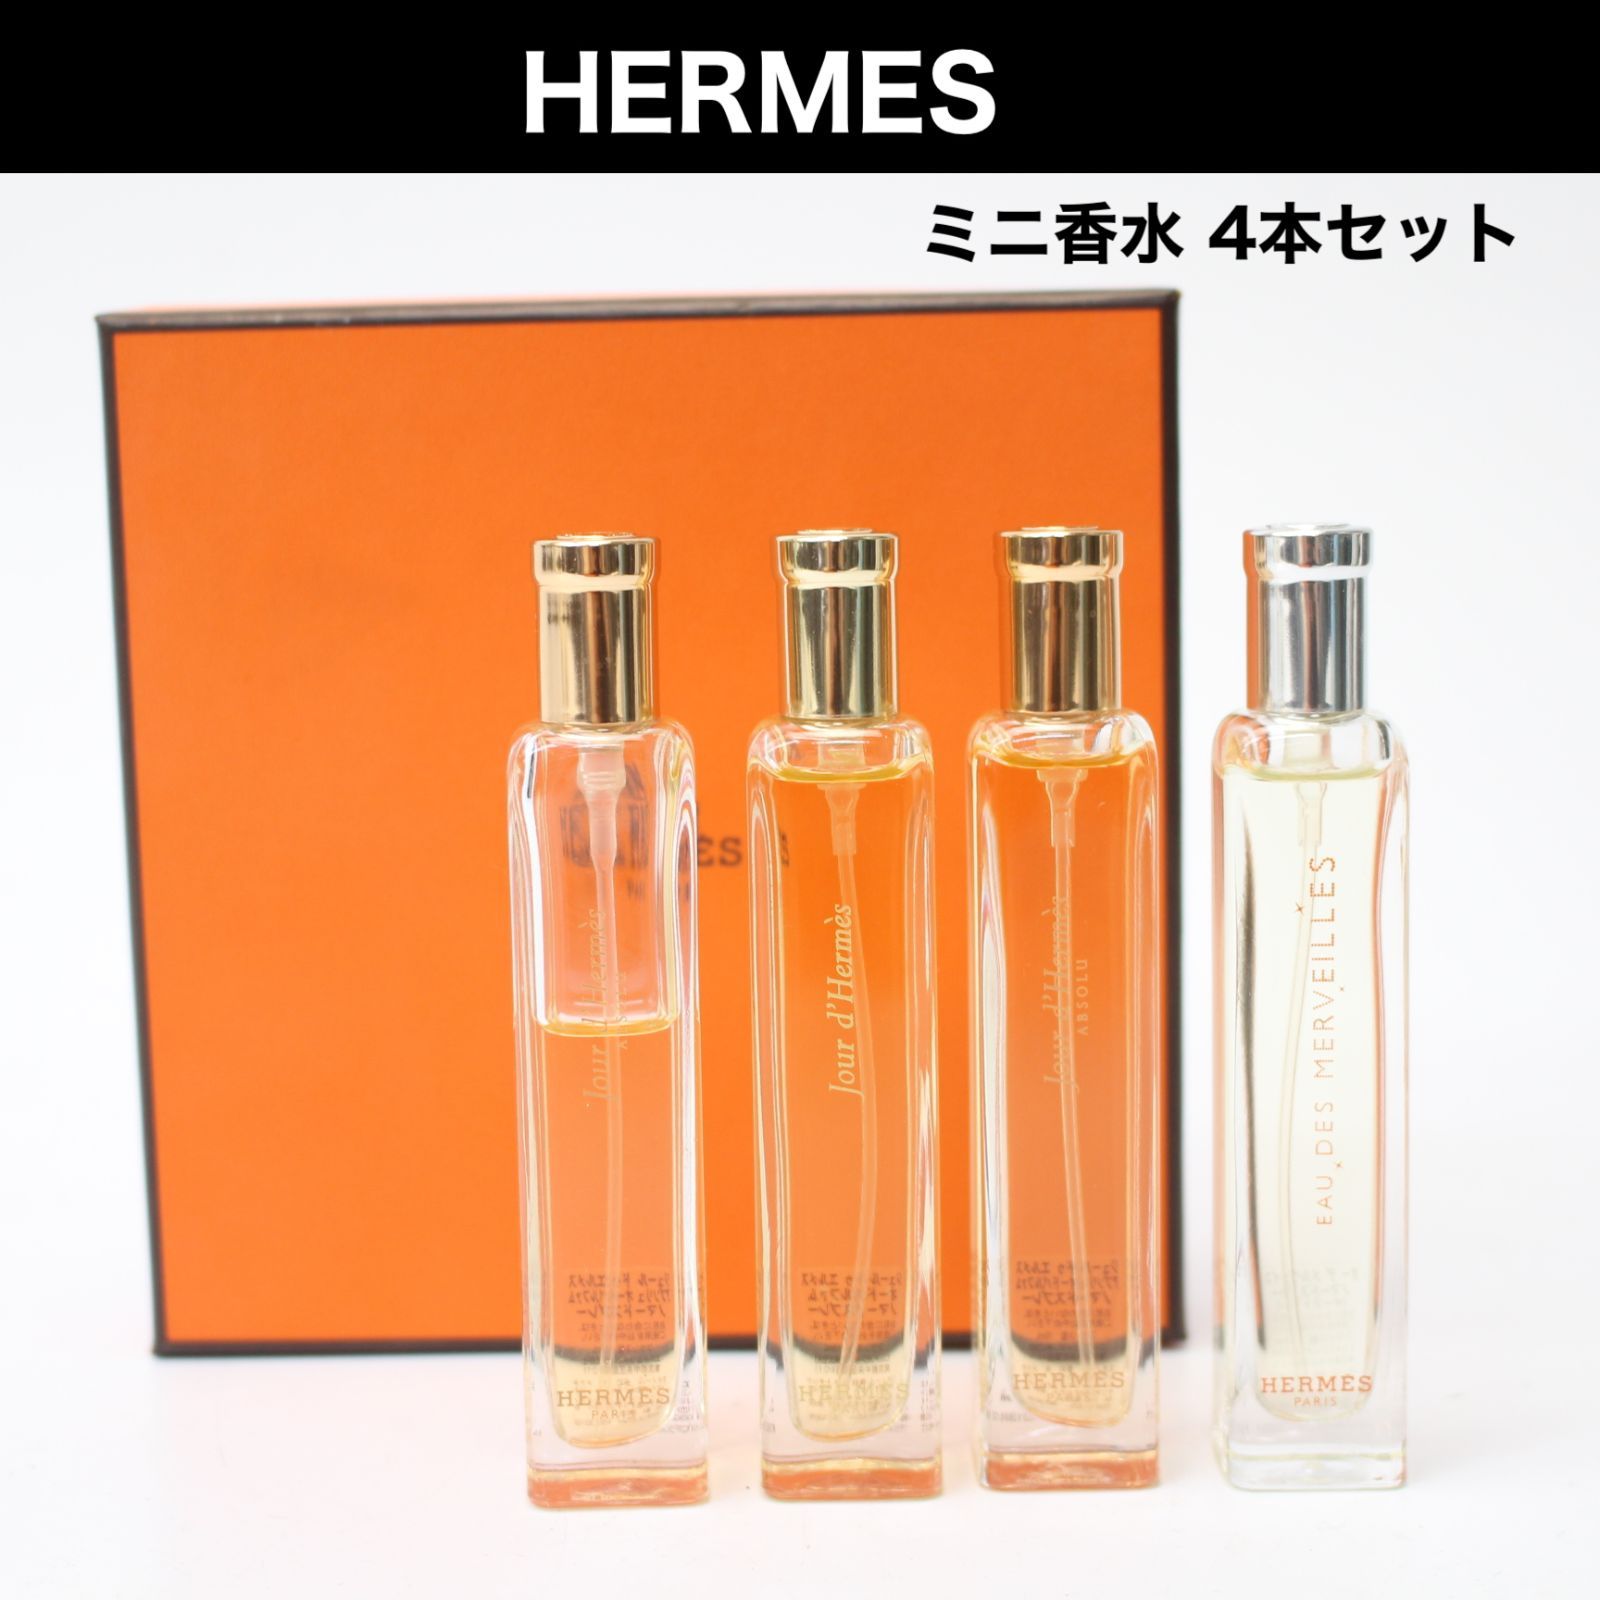 HERMES オードトワレ 4本セット - 香水(ユニセックス)